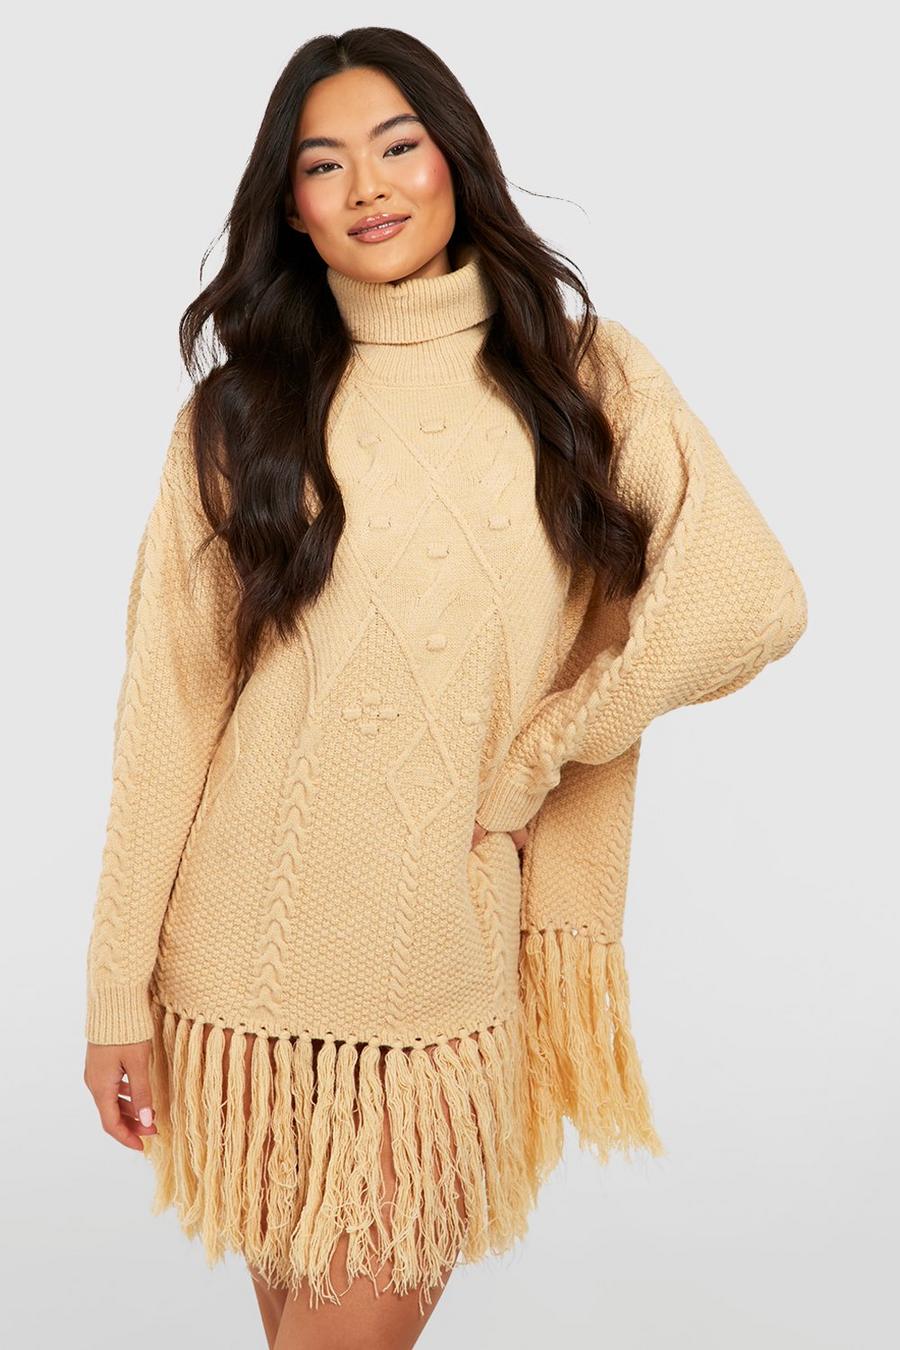 Stone beige Turtleneck Cable Knit Tassel Sweater Dress